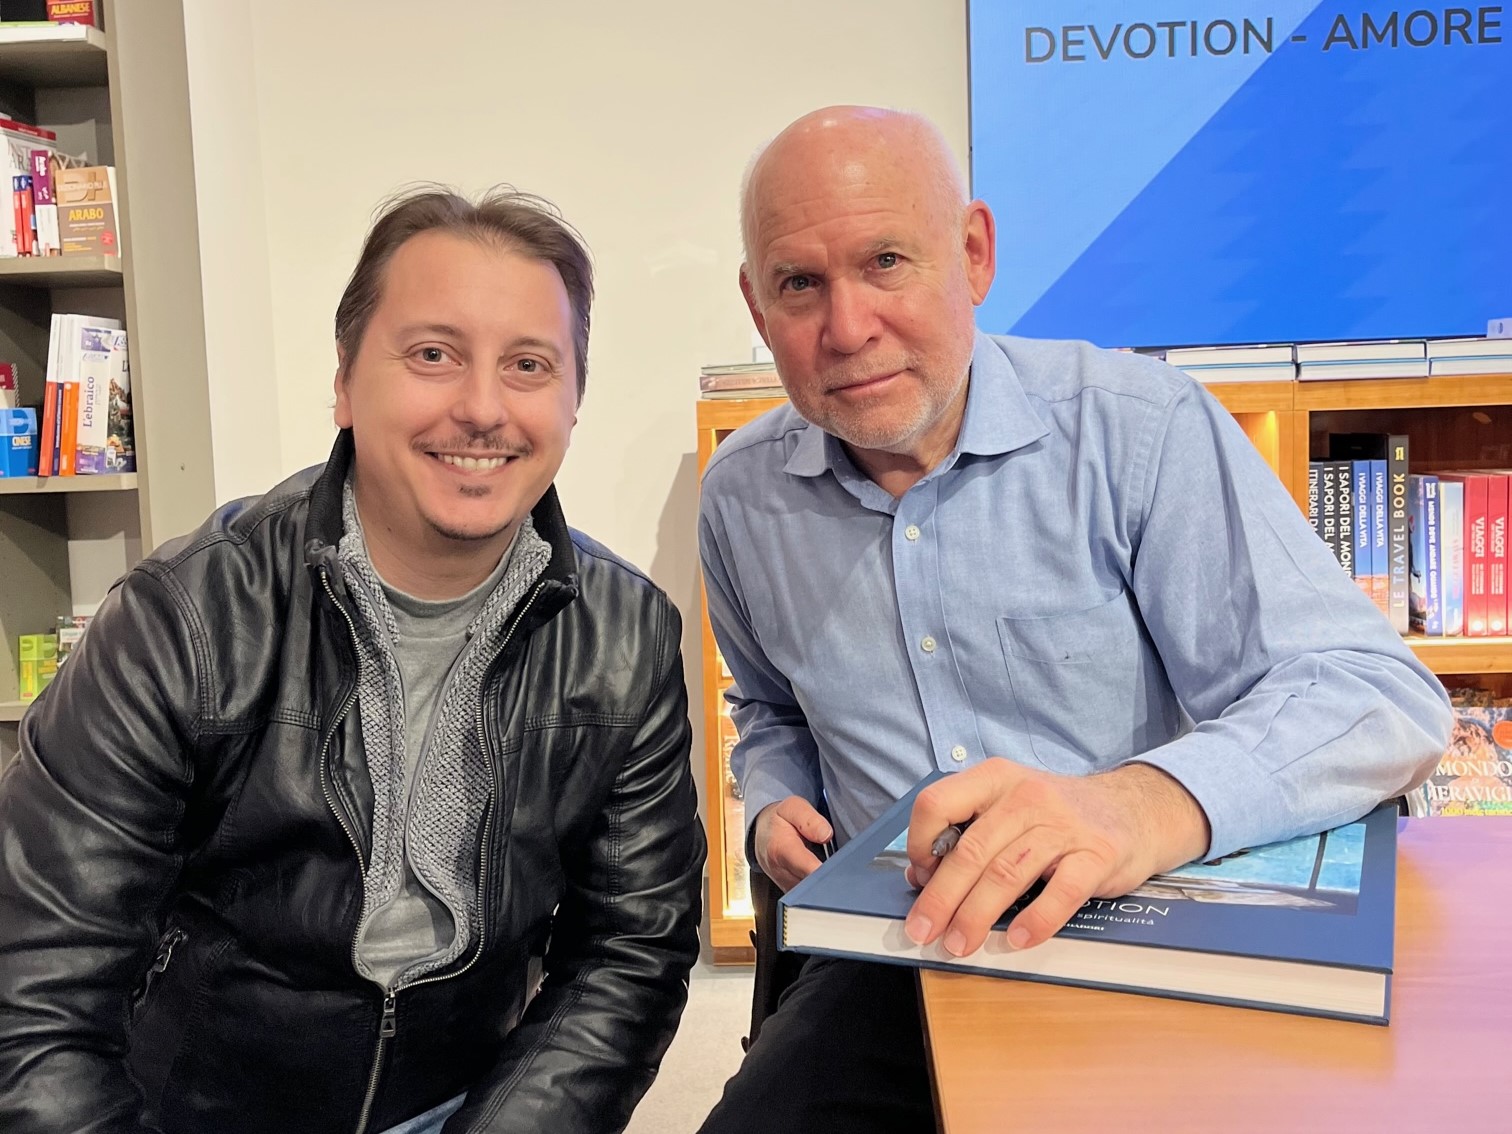 Steve McCurry presenta a Milano il nuovo volume Devotion